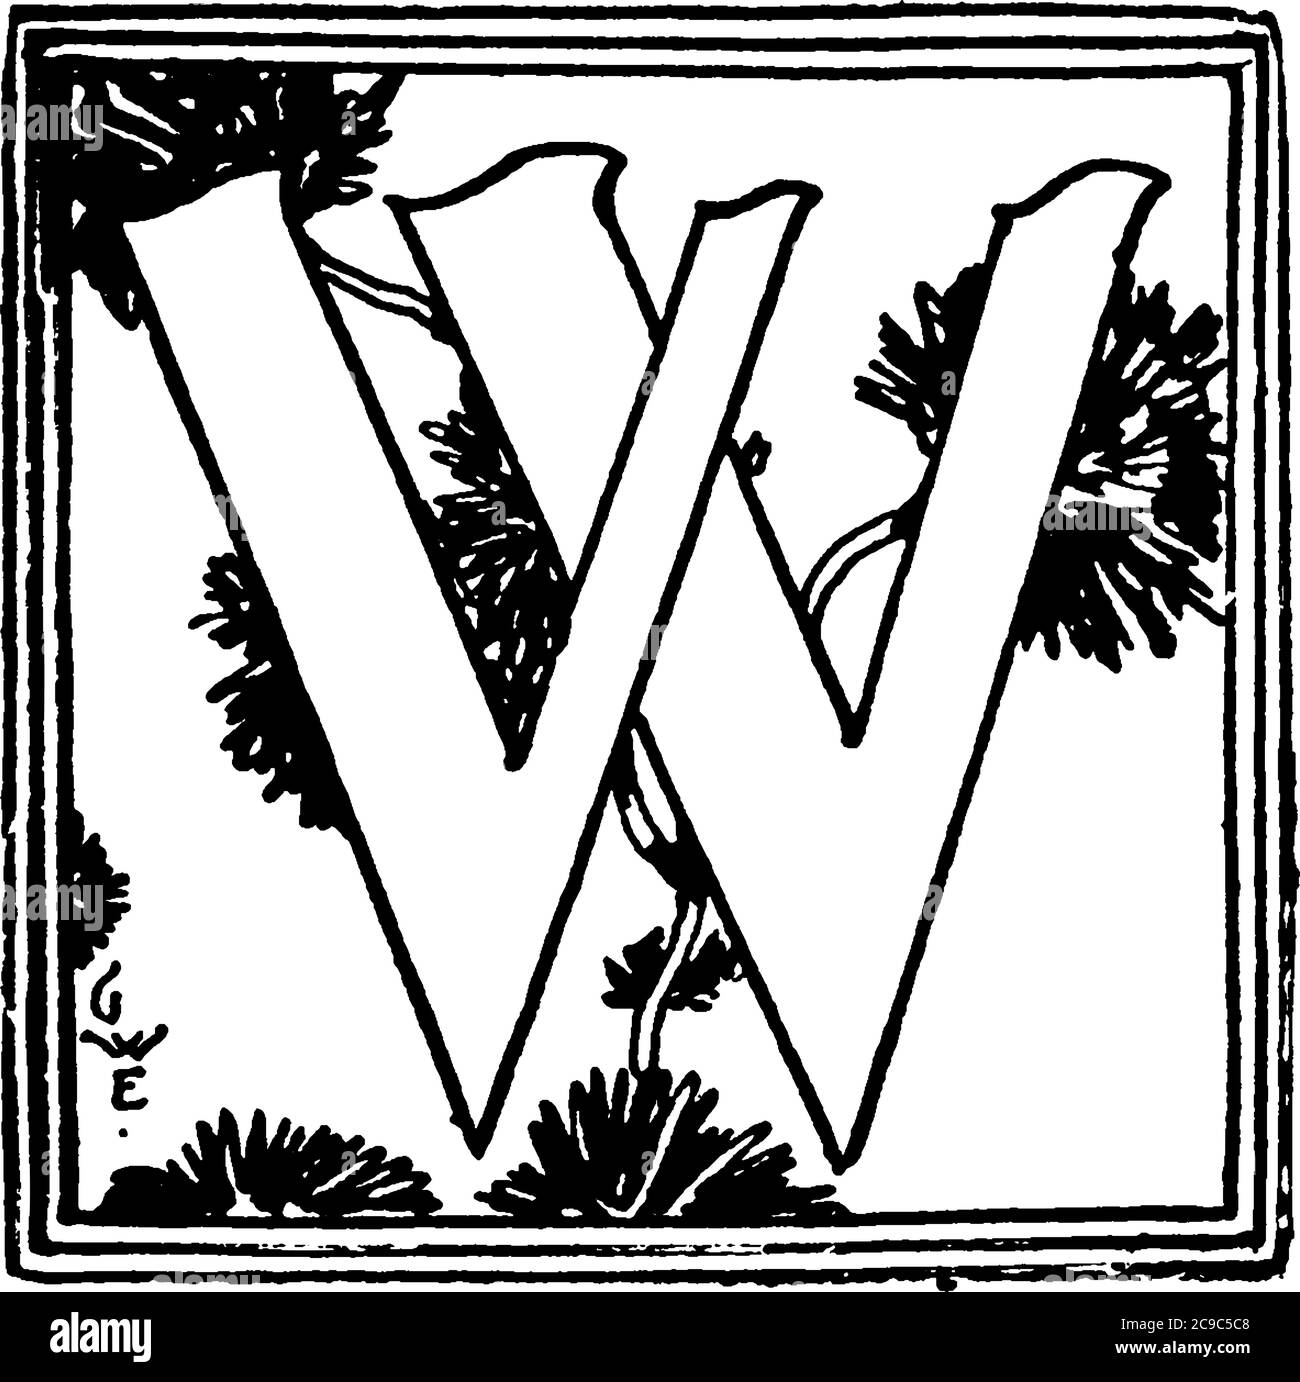 Eine typische Darstellung eines Alphabets 'Capital-W', in der Mitte von wiederholten ausgefallenen Designs und Dekorationen umgeben platziert, Vintage-Linie Zeichnung o Stock Vektor